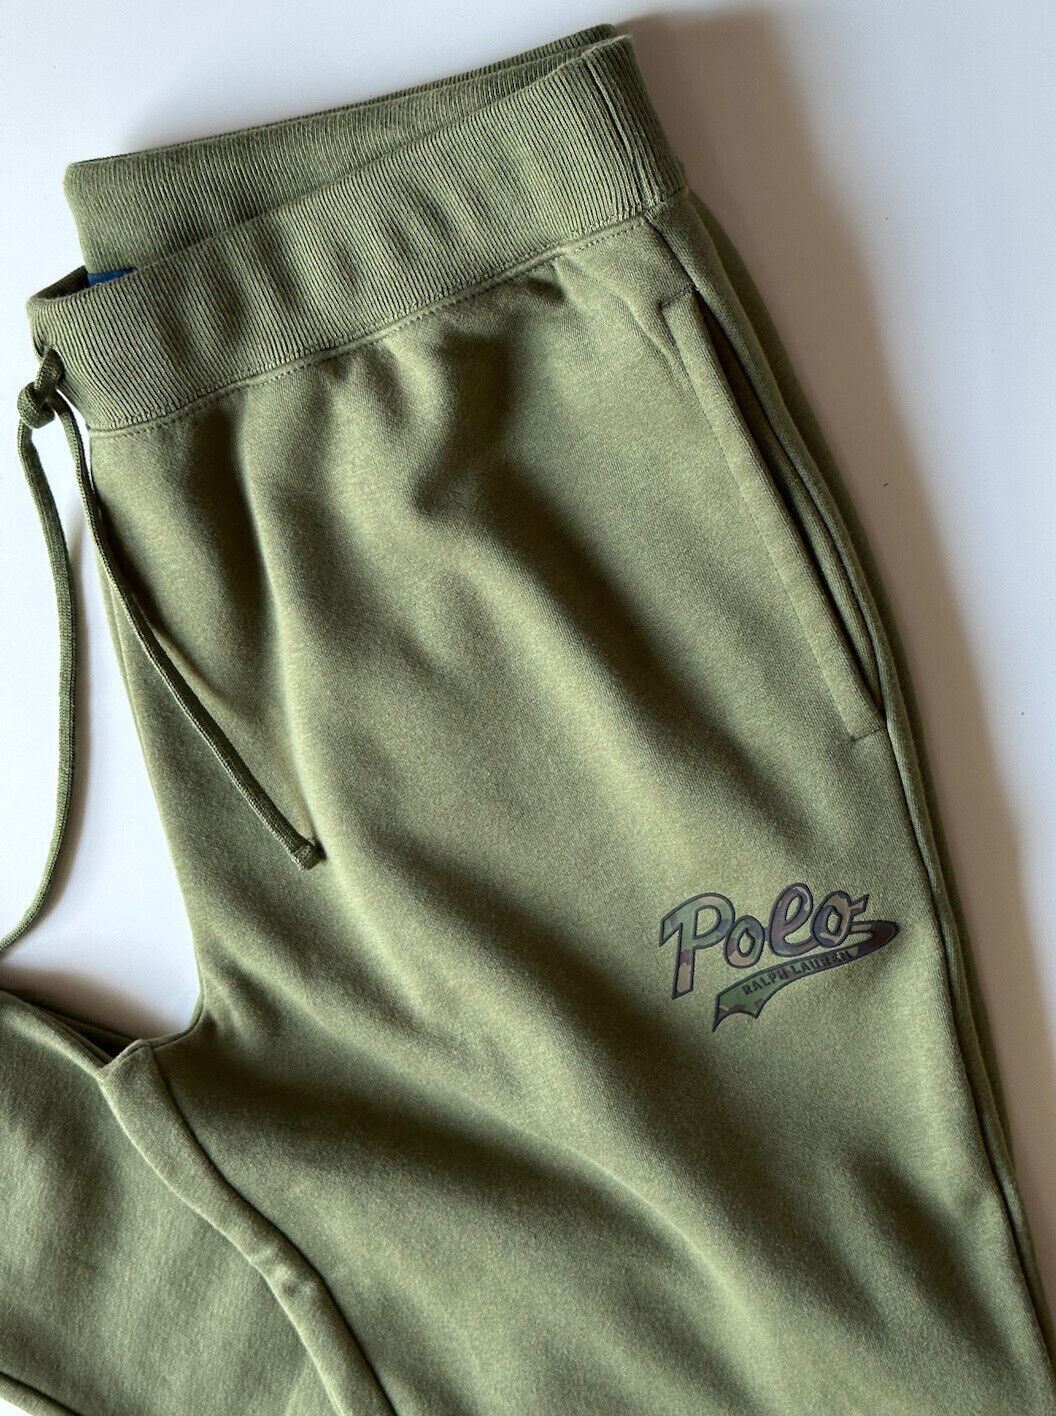 Neu mit Etikett: 138 $ Polo Ralph Lauren Herren-Freizeithose mit Polo-Logo in Grün, XL/TG